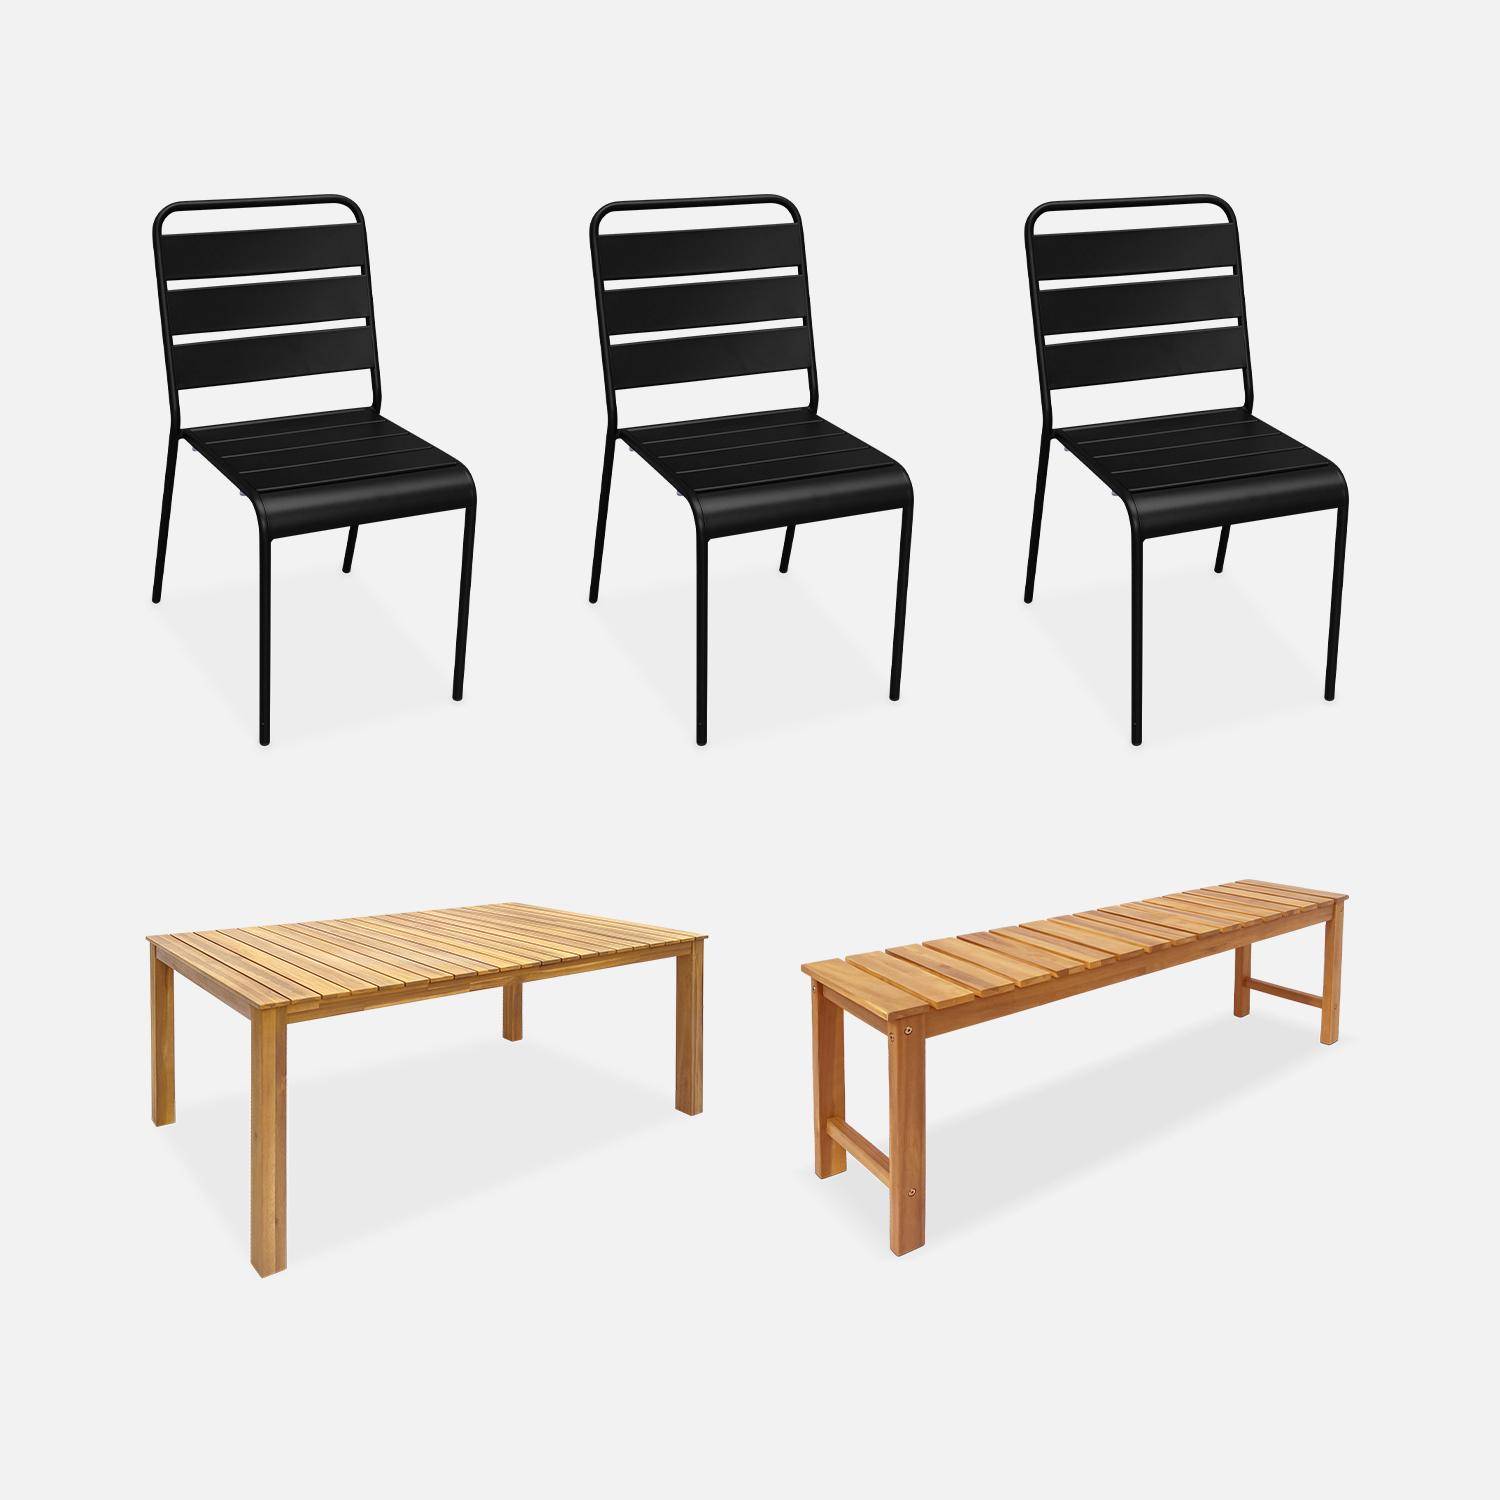 Table intérieur / extérieur bois d'acacia + banc 3 places + 3 chaises en métal noir Photo1